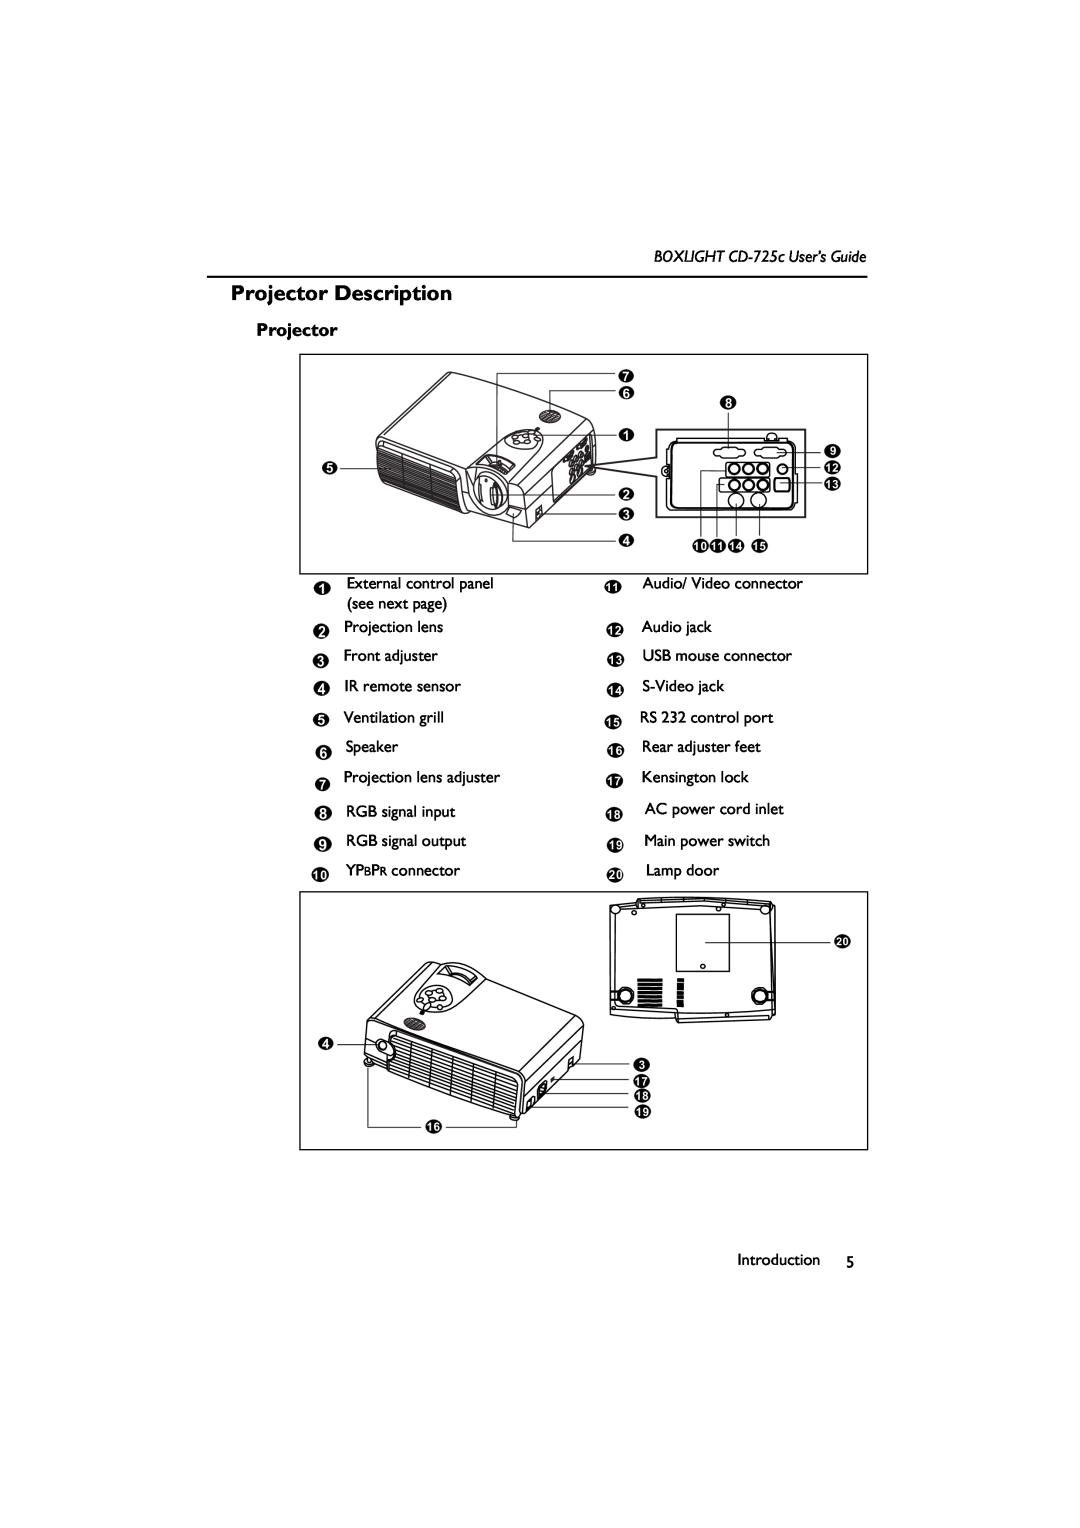 BOXLIGHT manual Projector Description, BOXLIGHT CD-725c User’s Guide 